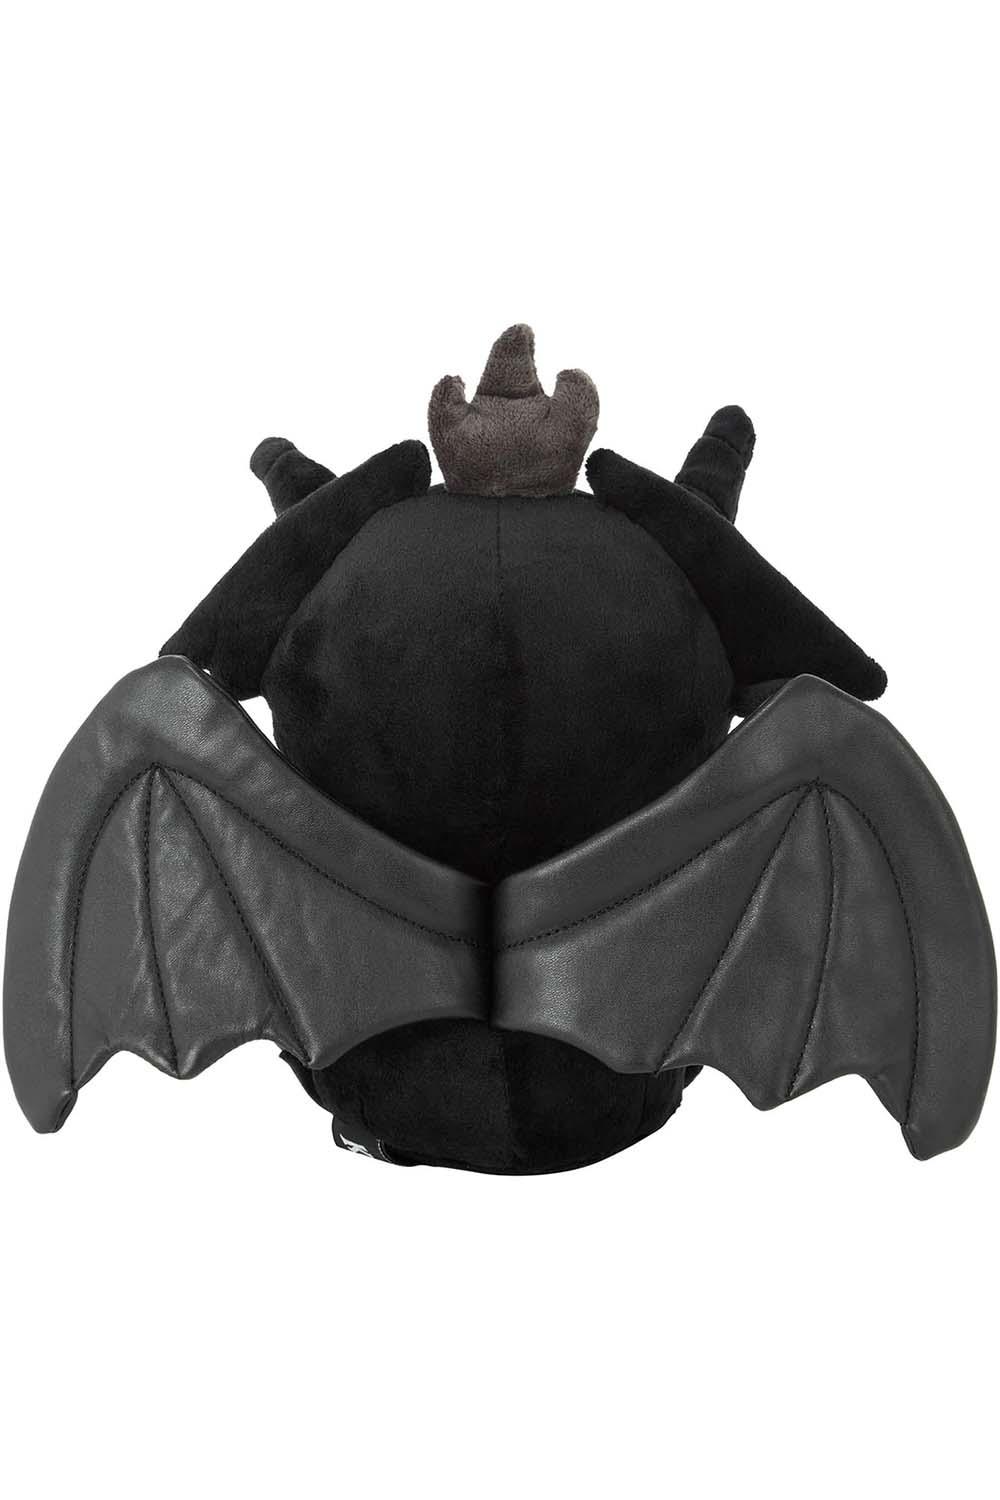 Killstar Baby Dark Lord: Blackout Plush Toy - VampireFreaks